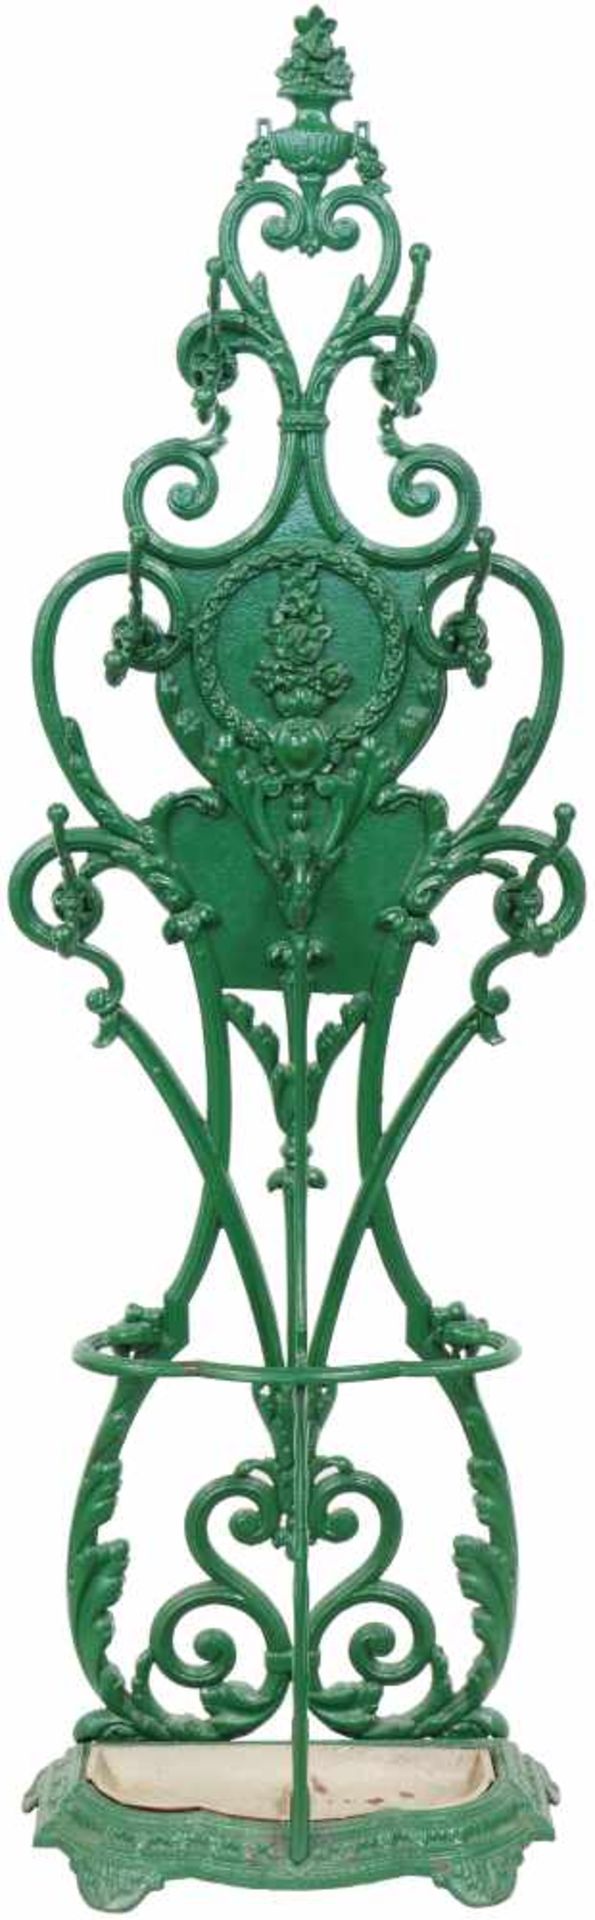 Een groengelakte gietijzeren portmanteau. Eind 19e eeuw.Breuken. Afm. H: 180 cm.A green laque cast